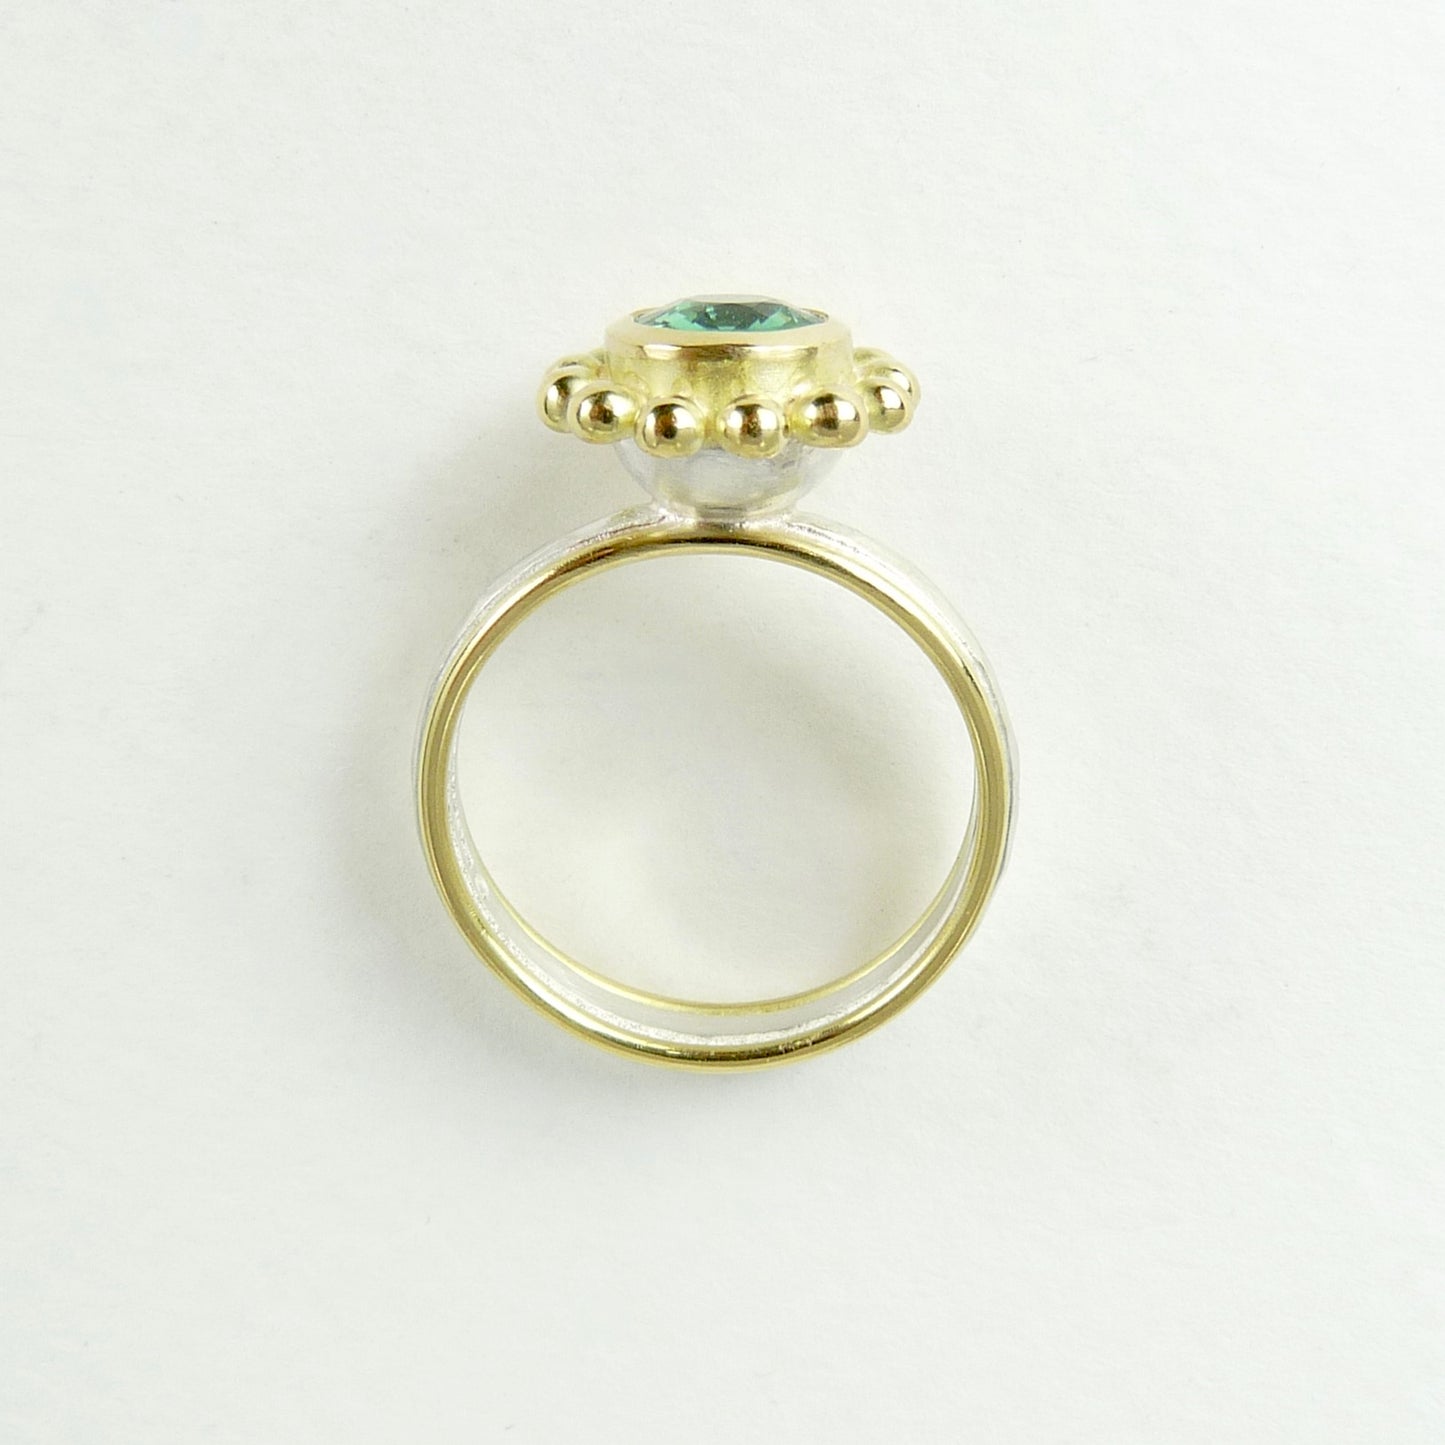 Green tourmaline Courtesan Ring